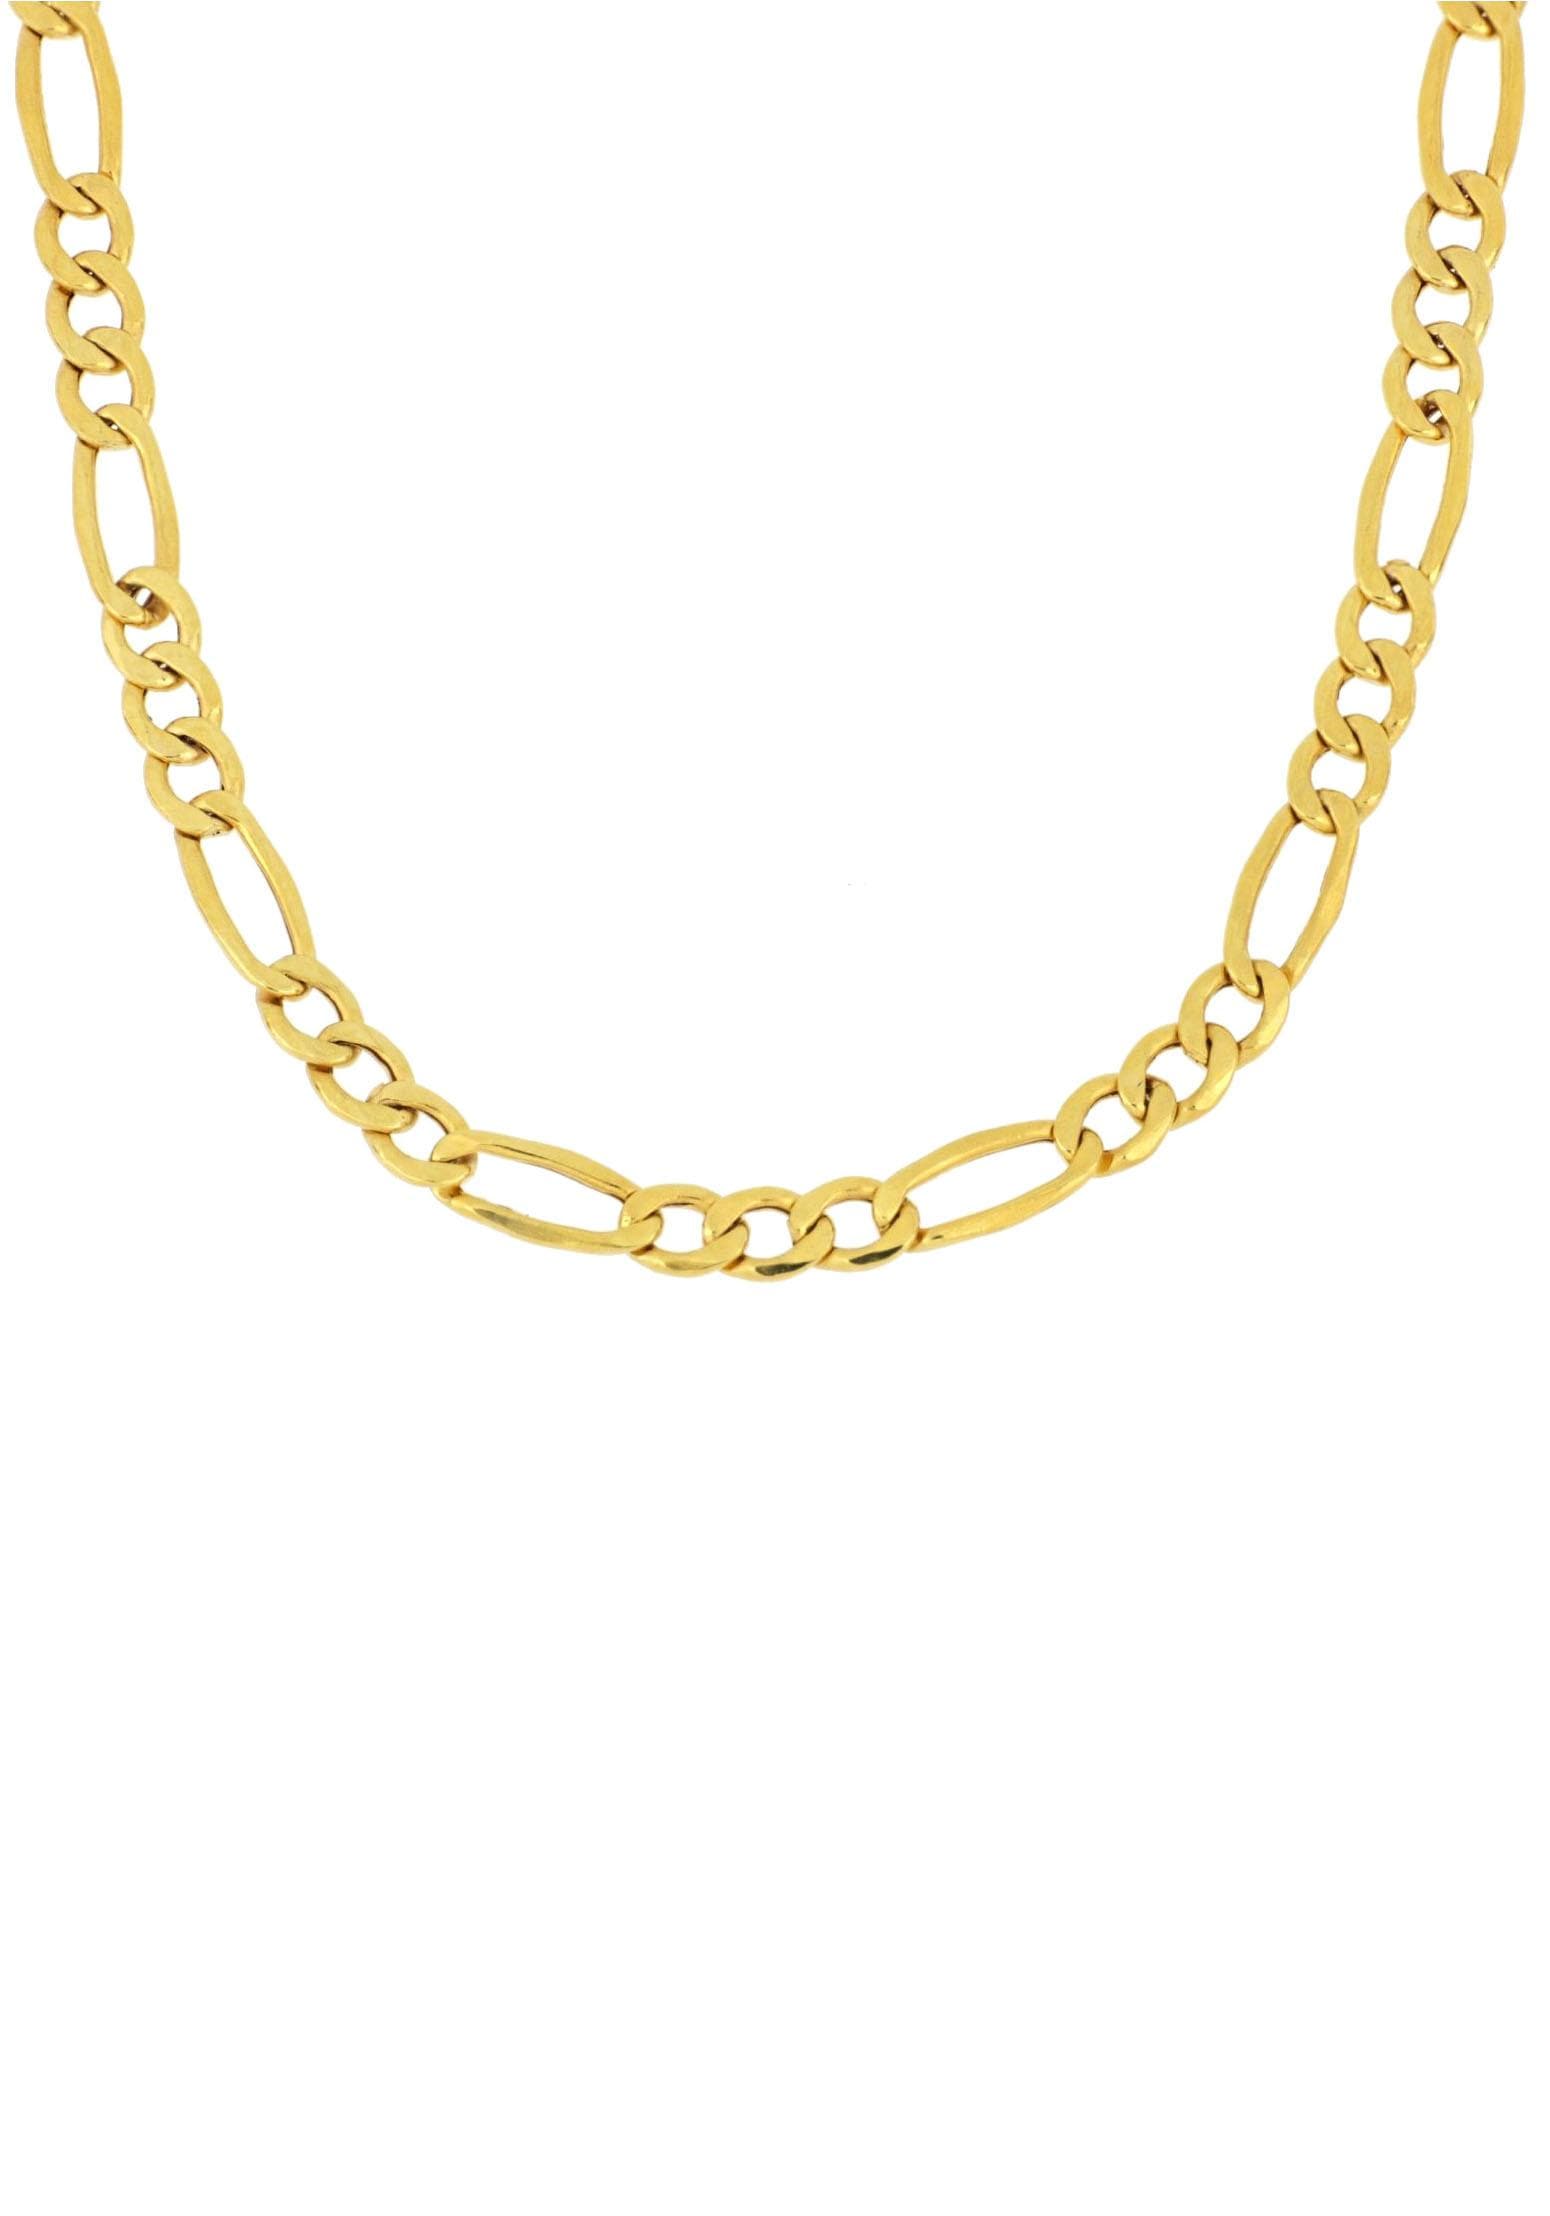 Firetti Goldkette »Figarokettengliederung, ca. 2,6 mm breit« bequem kaufen